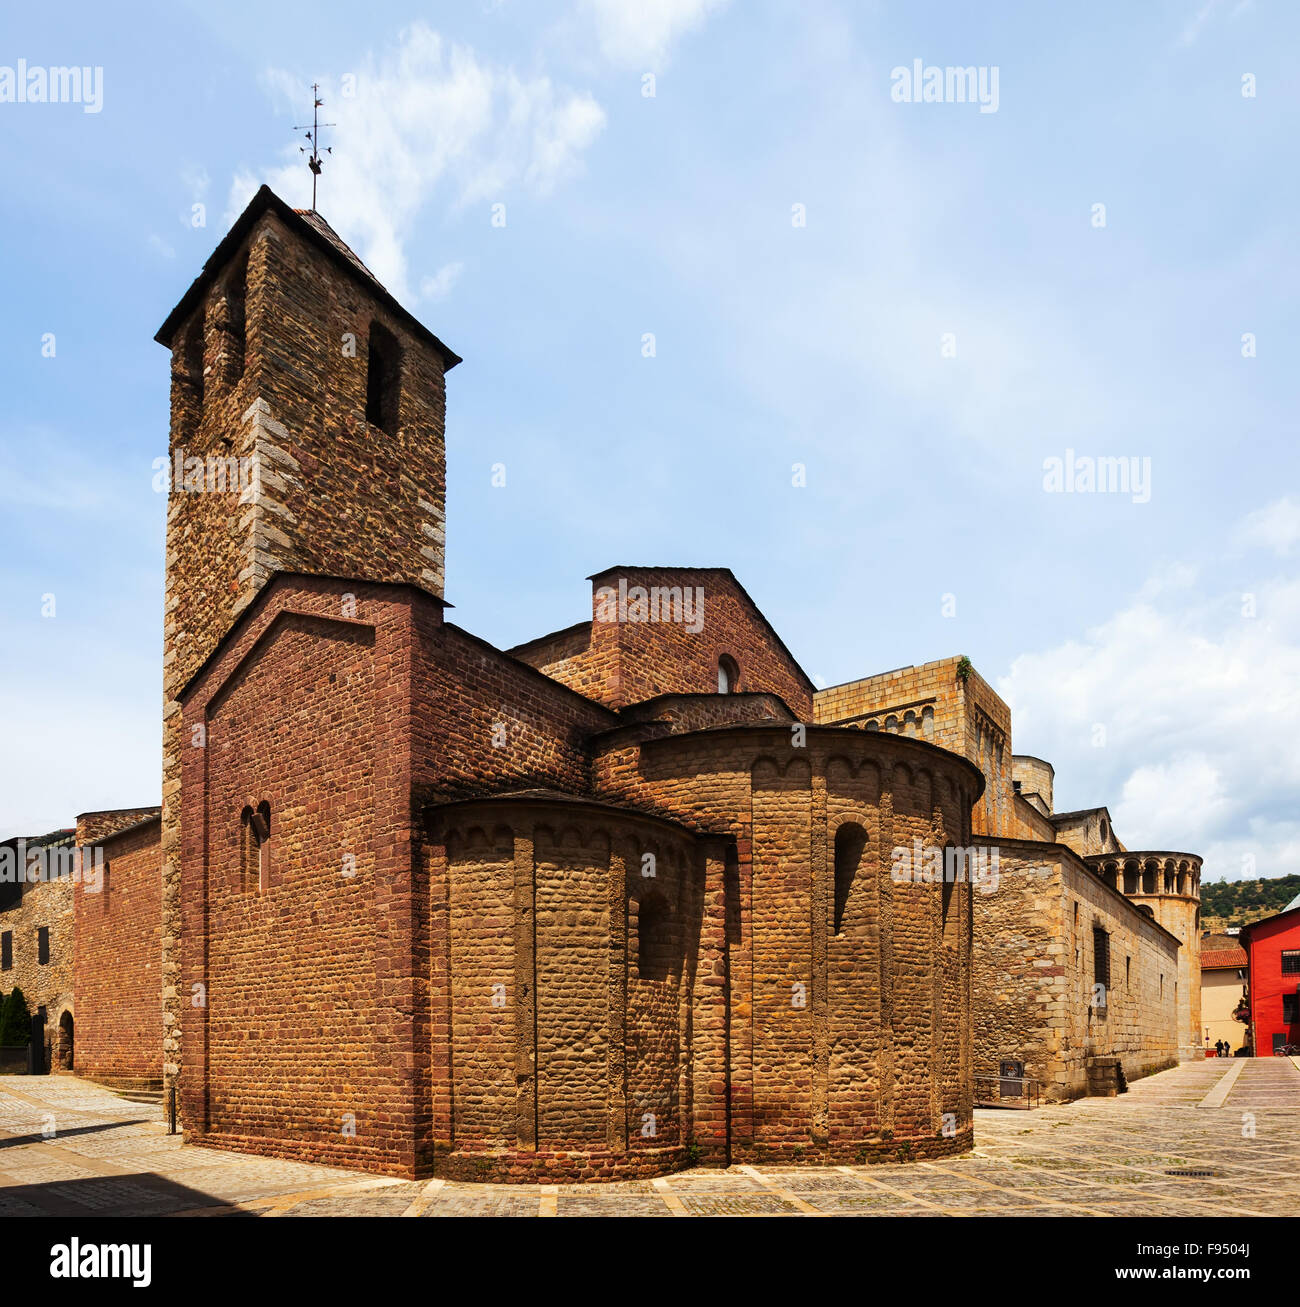 La vue quotidienne de la cathédrale d'Urgel en La Seu d'Urgell. La Catalogne, Espagne Banque D'Images